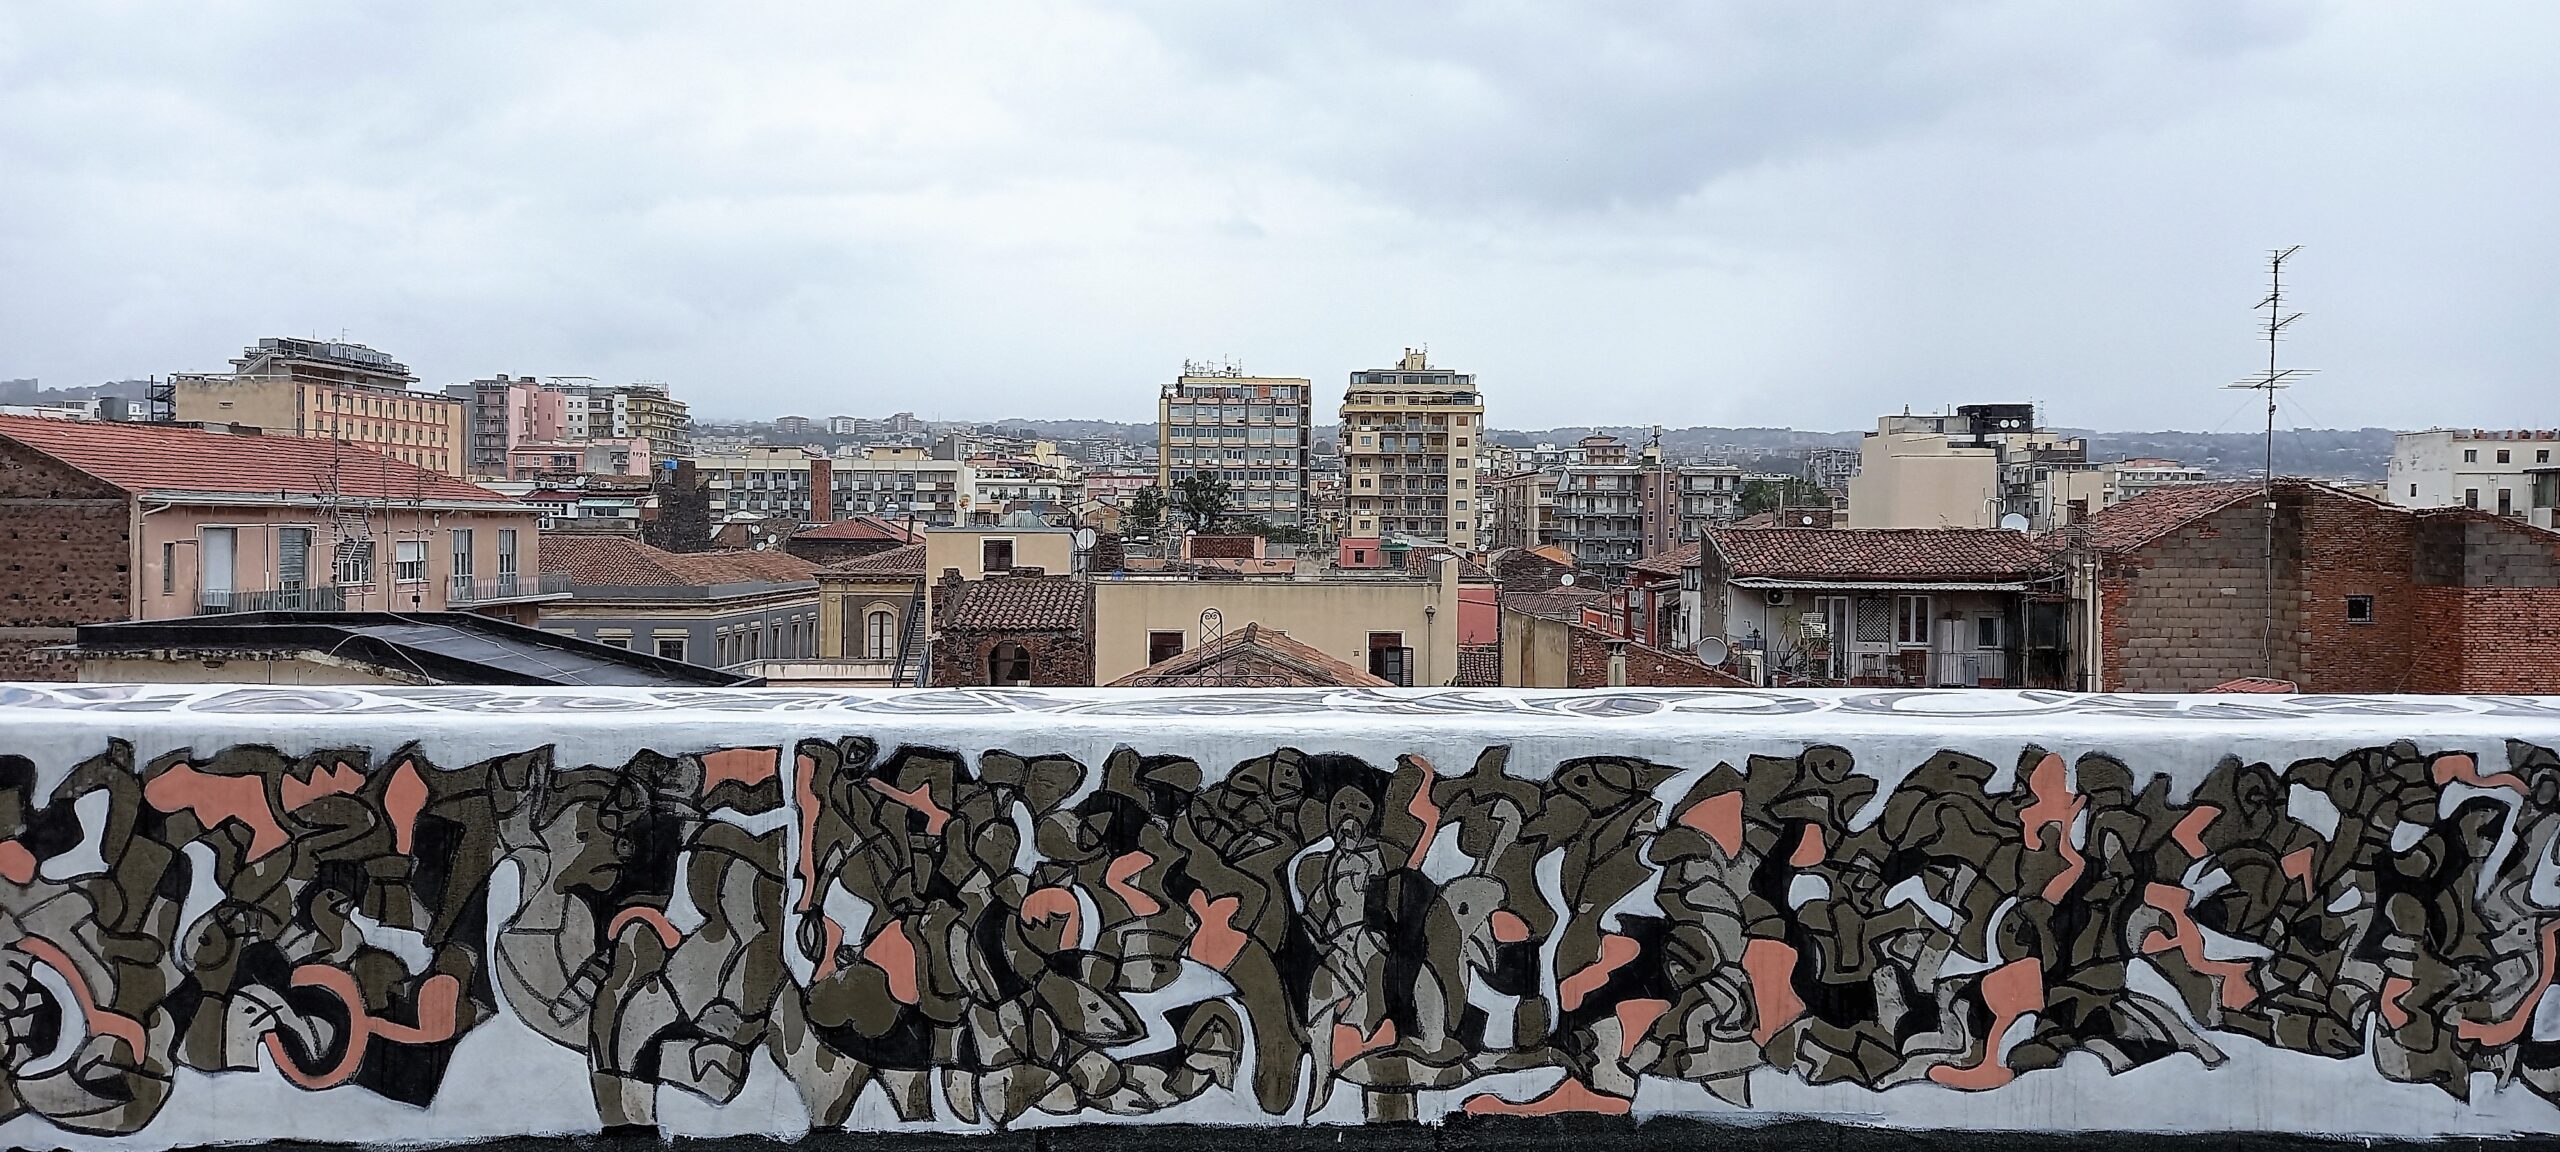 murales sicily contemporary artist catania visionaria cortile delle nevi